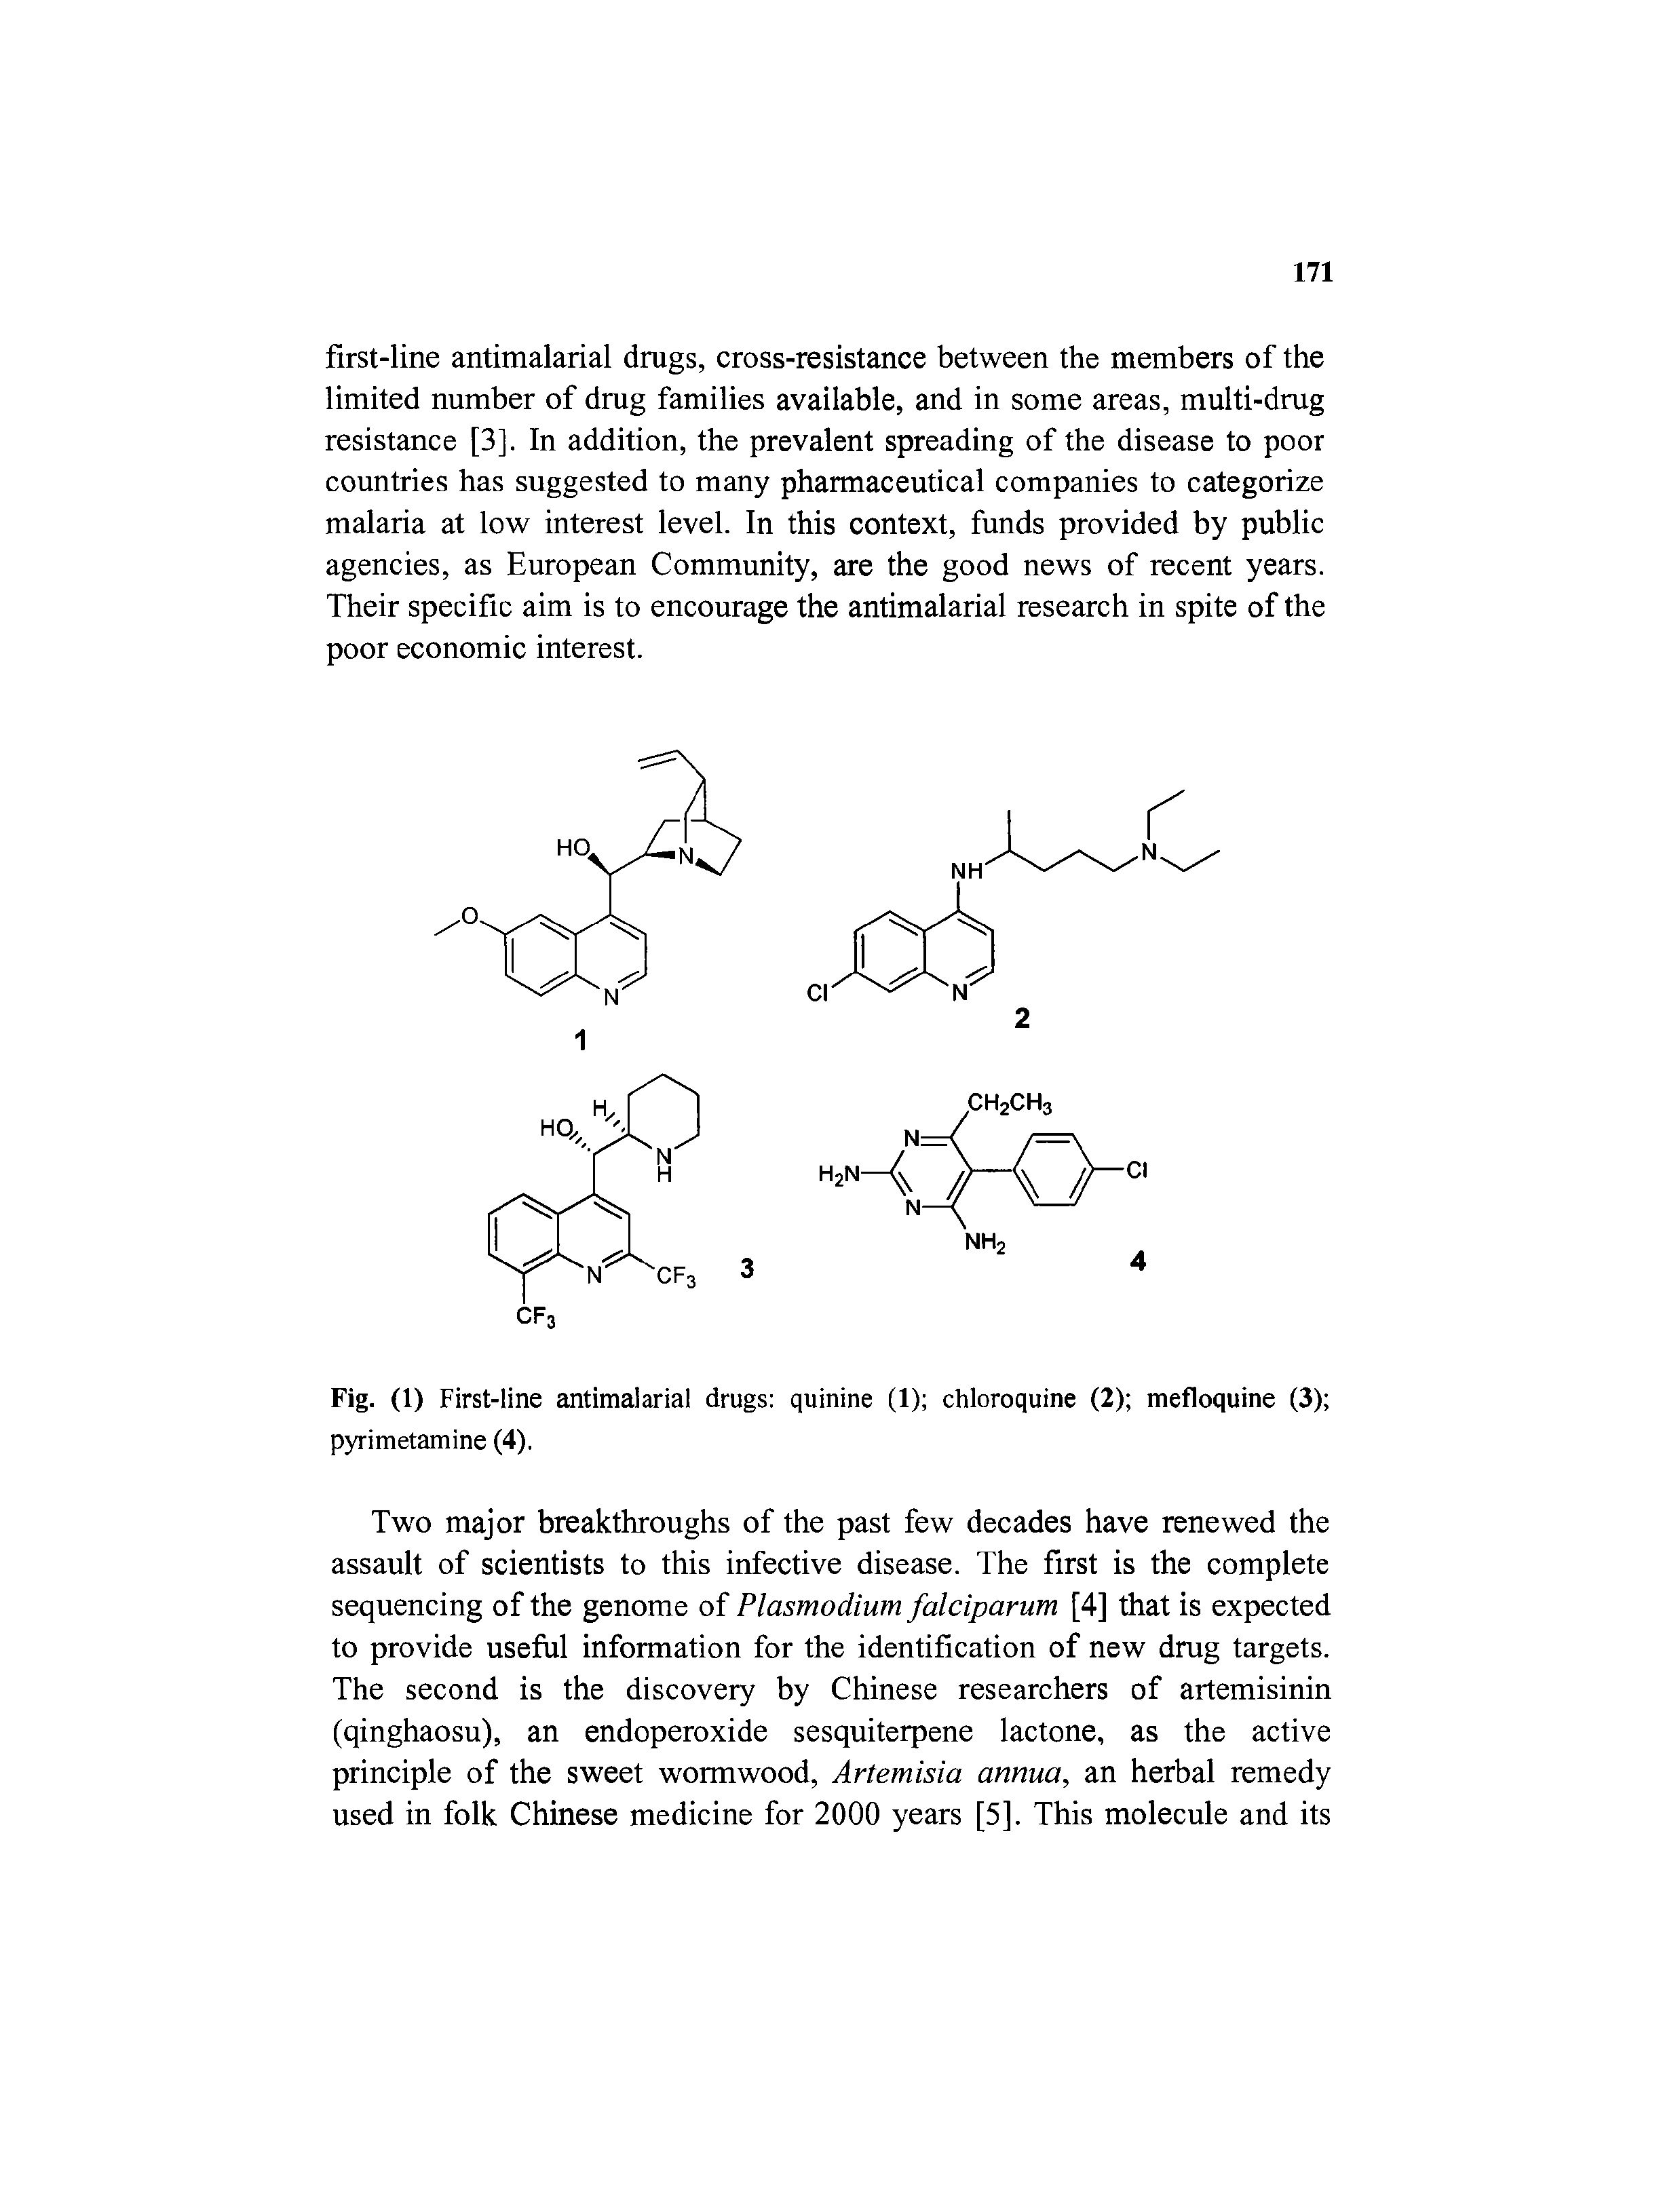 Fig. (1) First-line antimalarial drugs quinine (1) chloroquine (2) mefloquine (3) pyrimetamine (4).